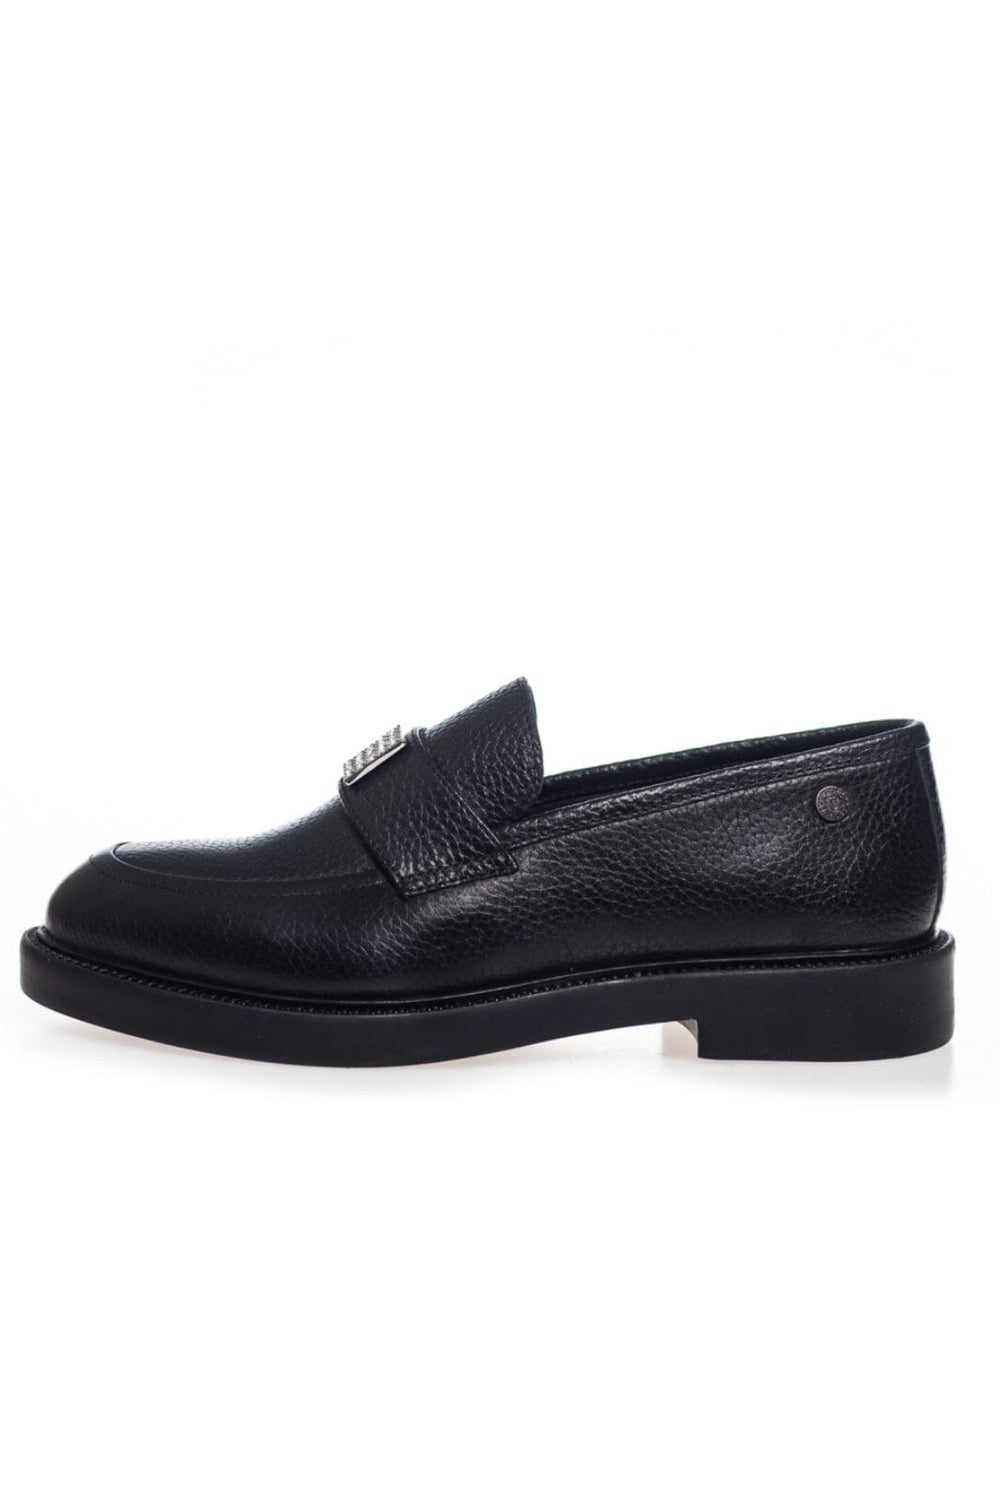 Copenhagen Shoes - Carry Me - Black Loafers 